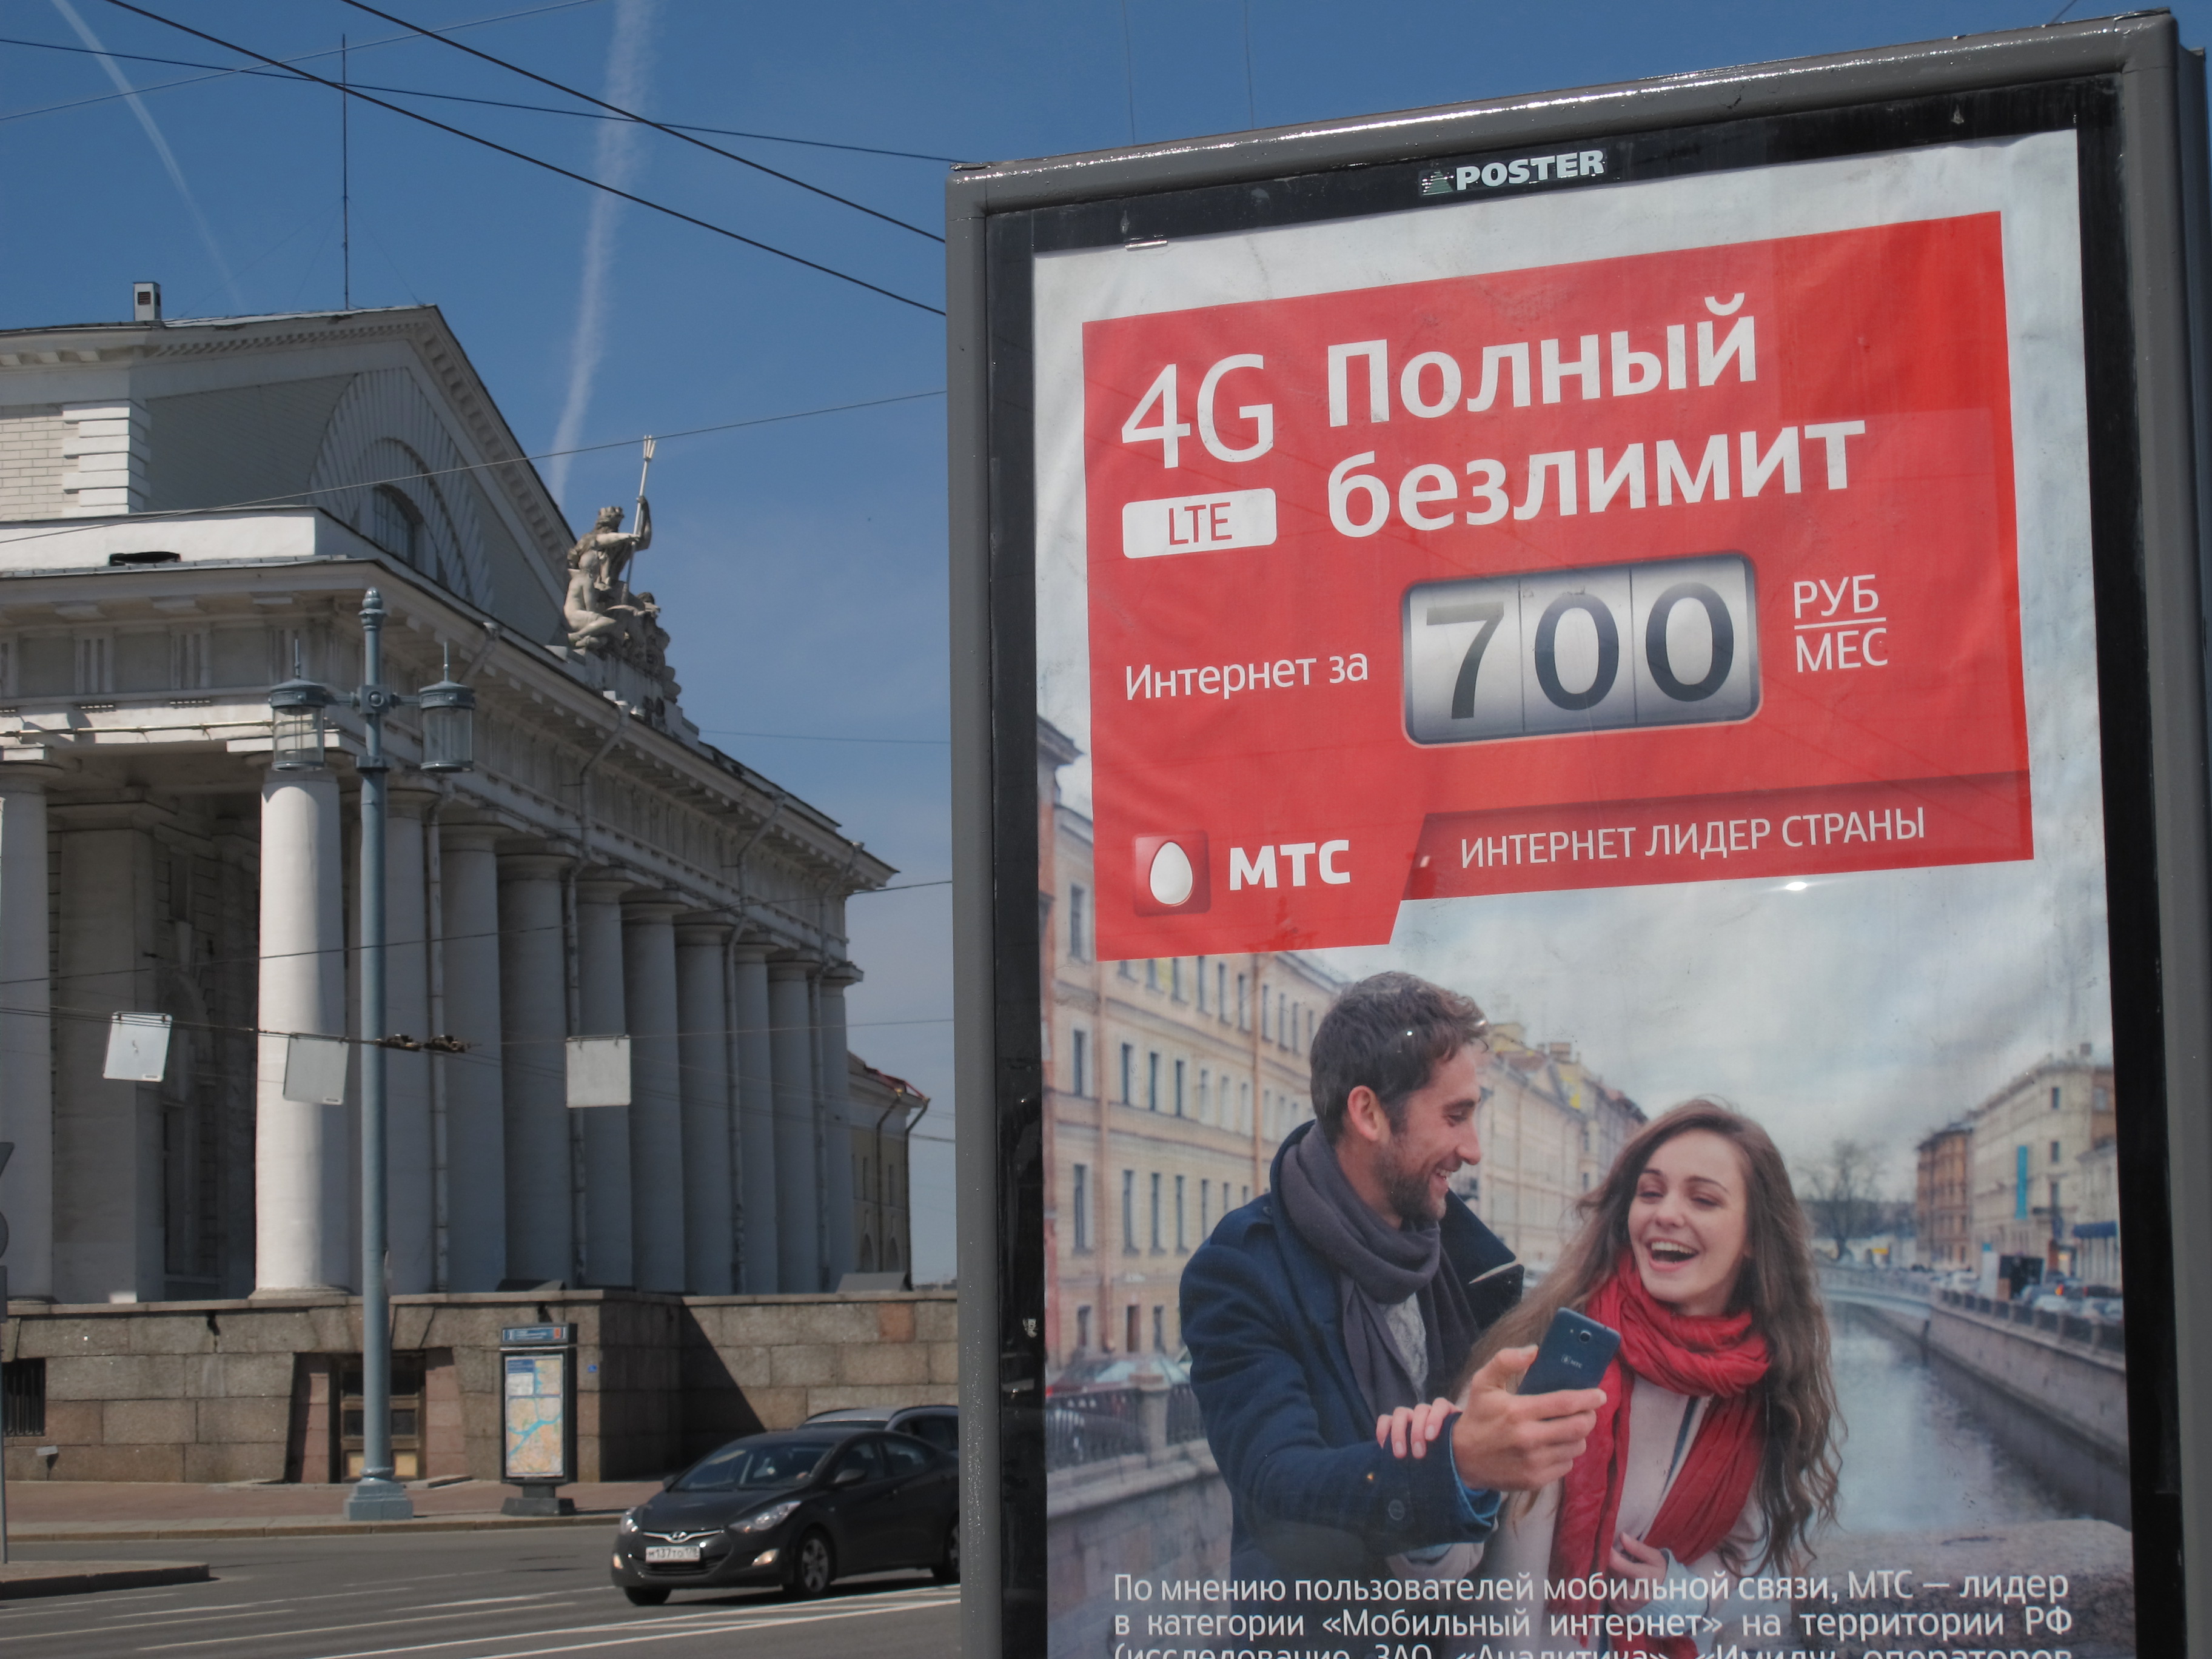 Операторам Санкт-Петербурга разрешили заключать договоры сроком на 10 лет